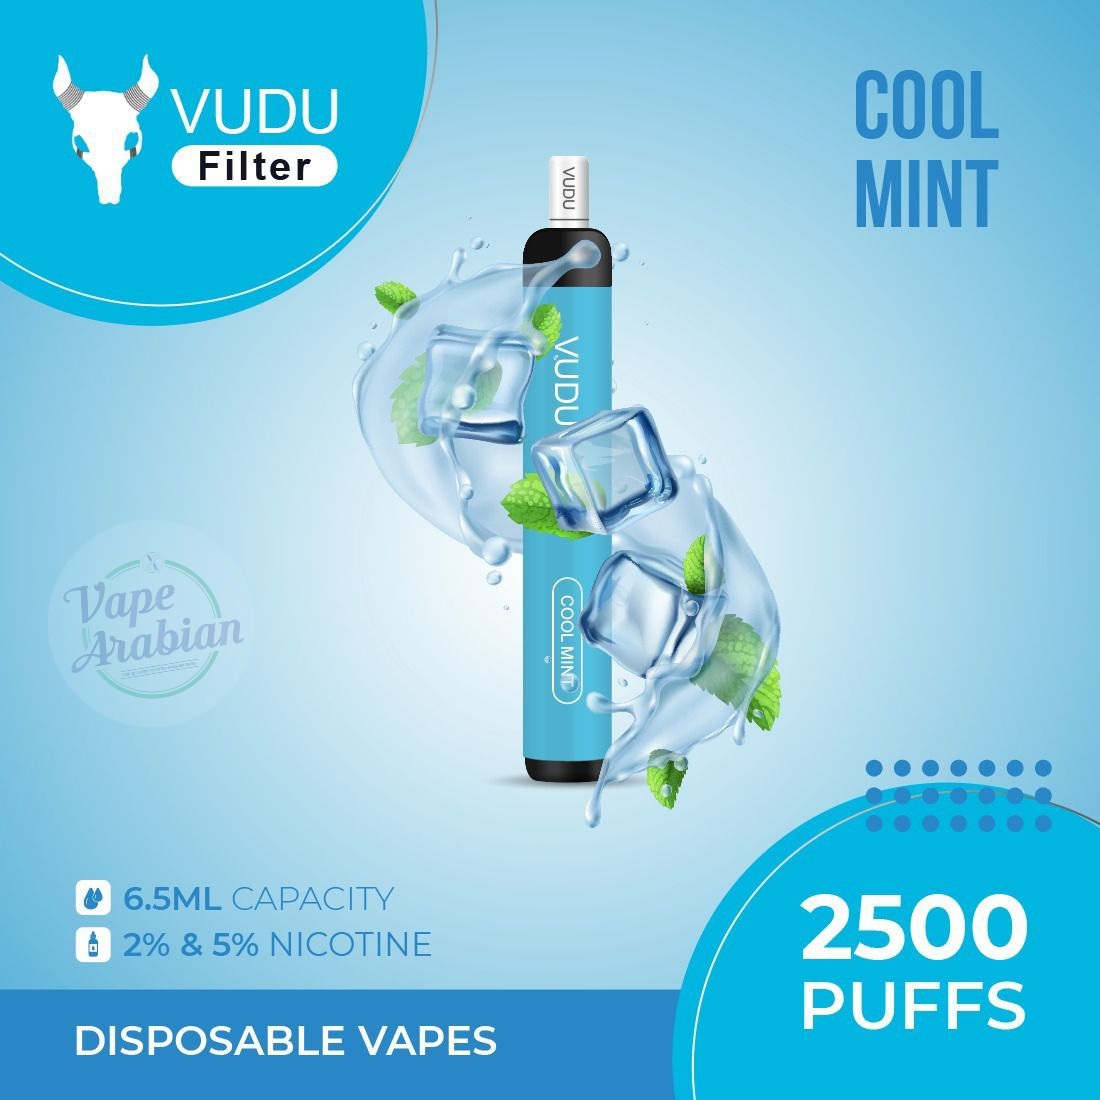 VUDU Filter Disposable 2500 Puffs- Cool Mint